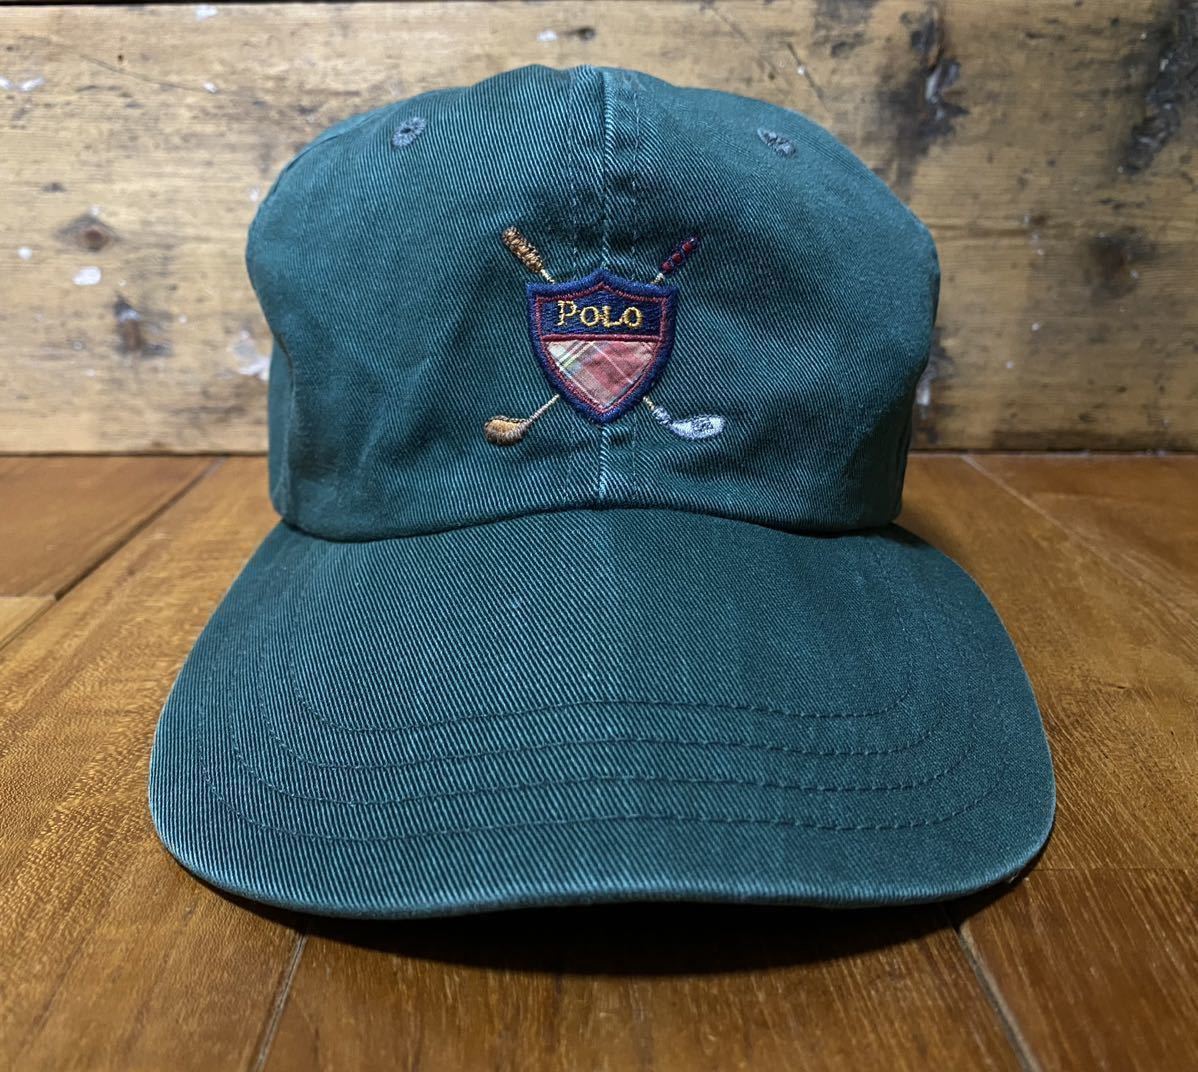 90s vintage USA製 Polo Ralph Lauren キャップ グリーン / OLD ポロ ラルフローレン cap 帽子 hat  ハット Golf ゴルフ RRL sport 緑